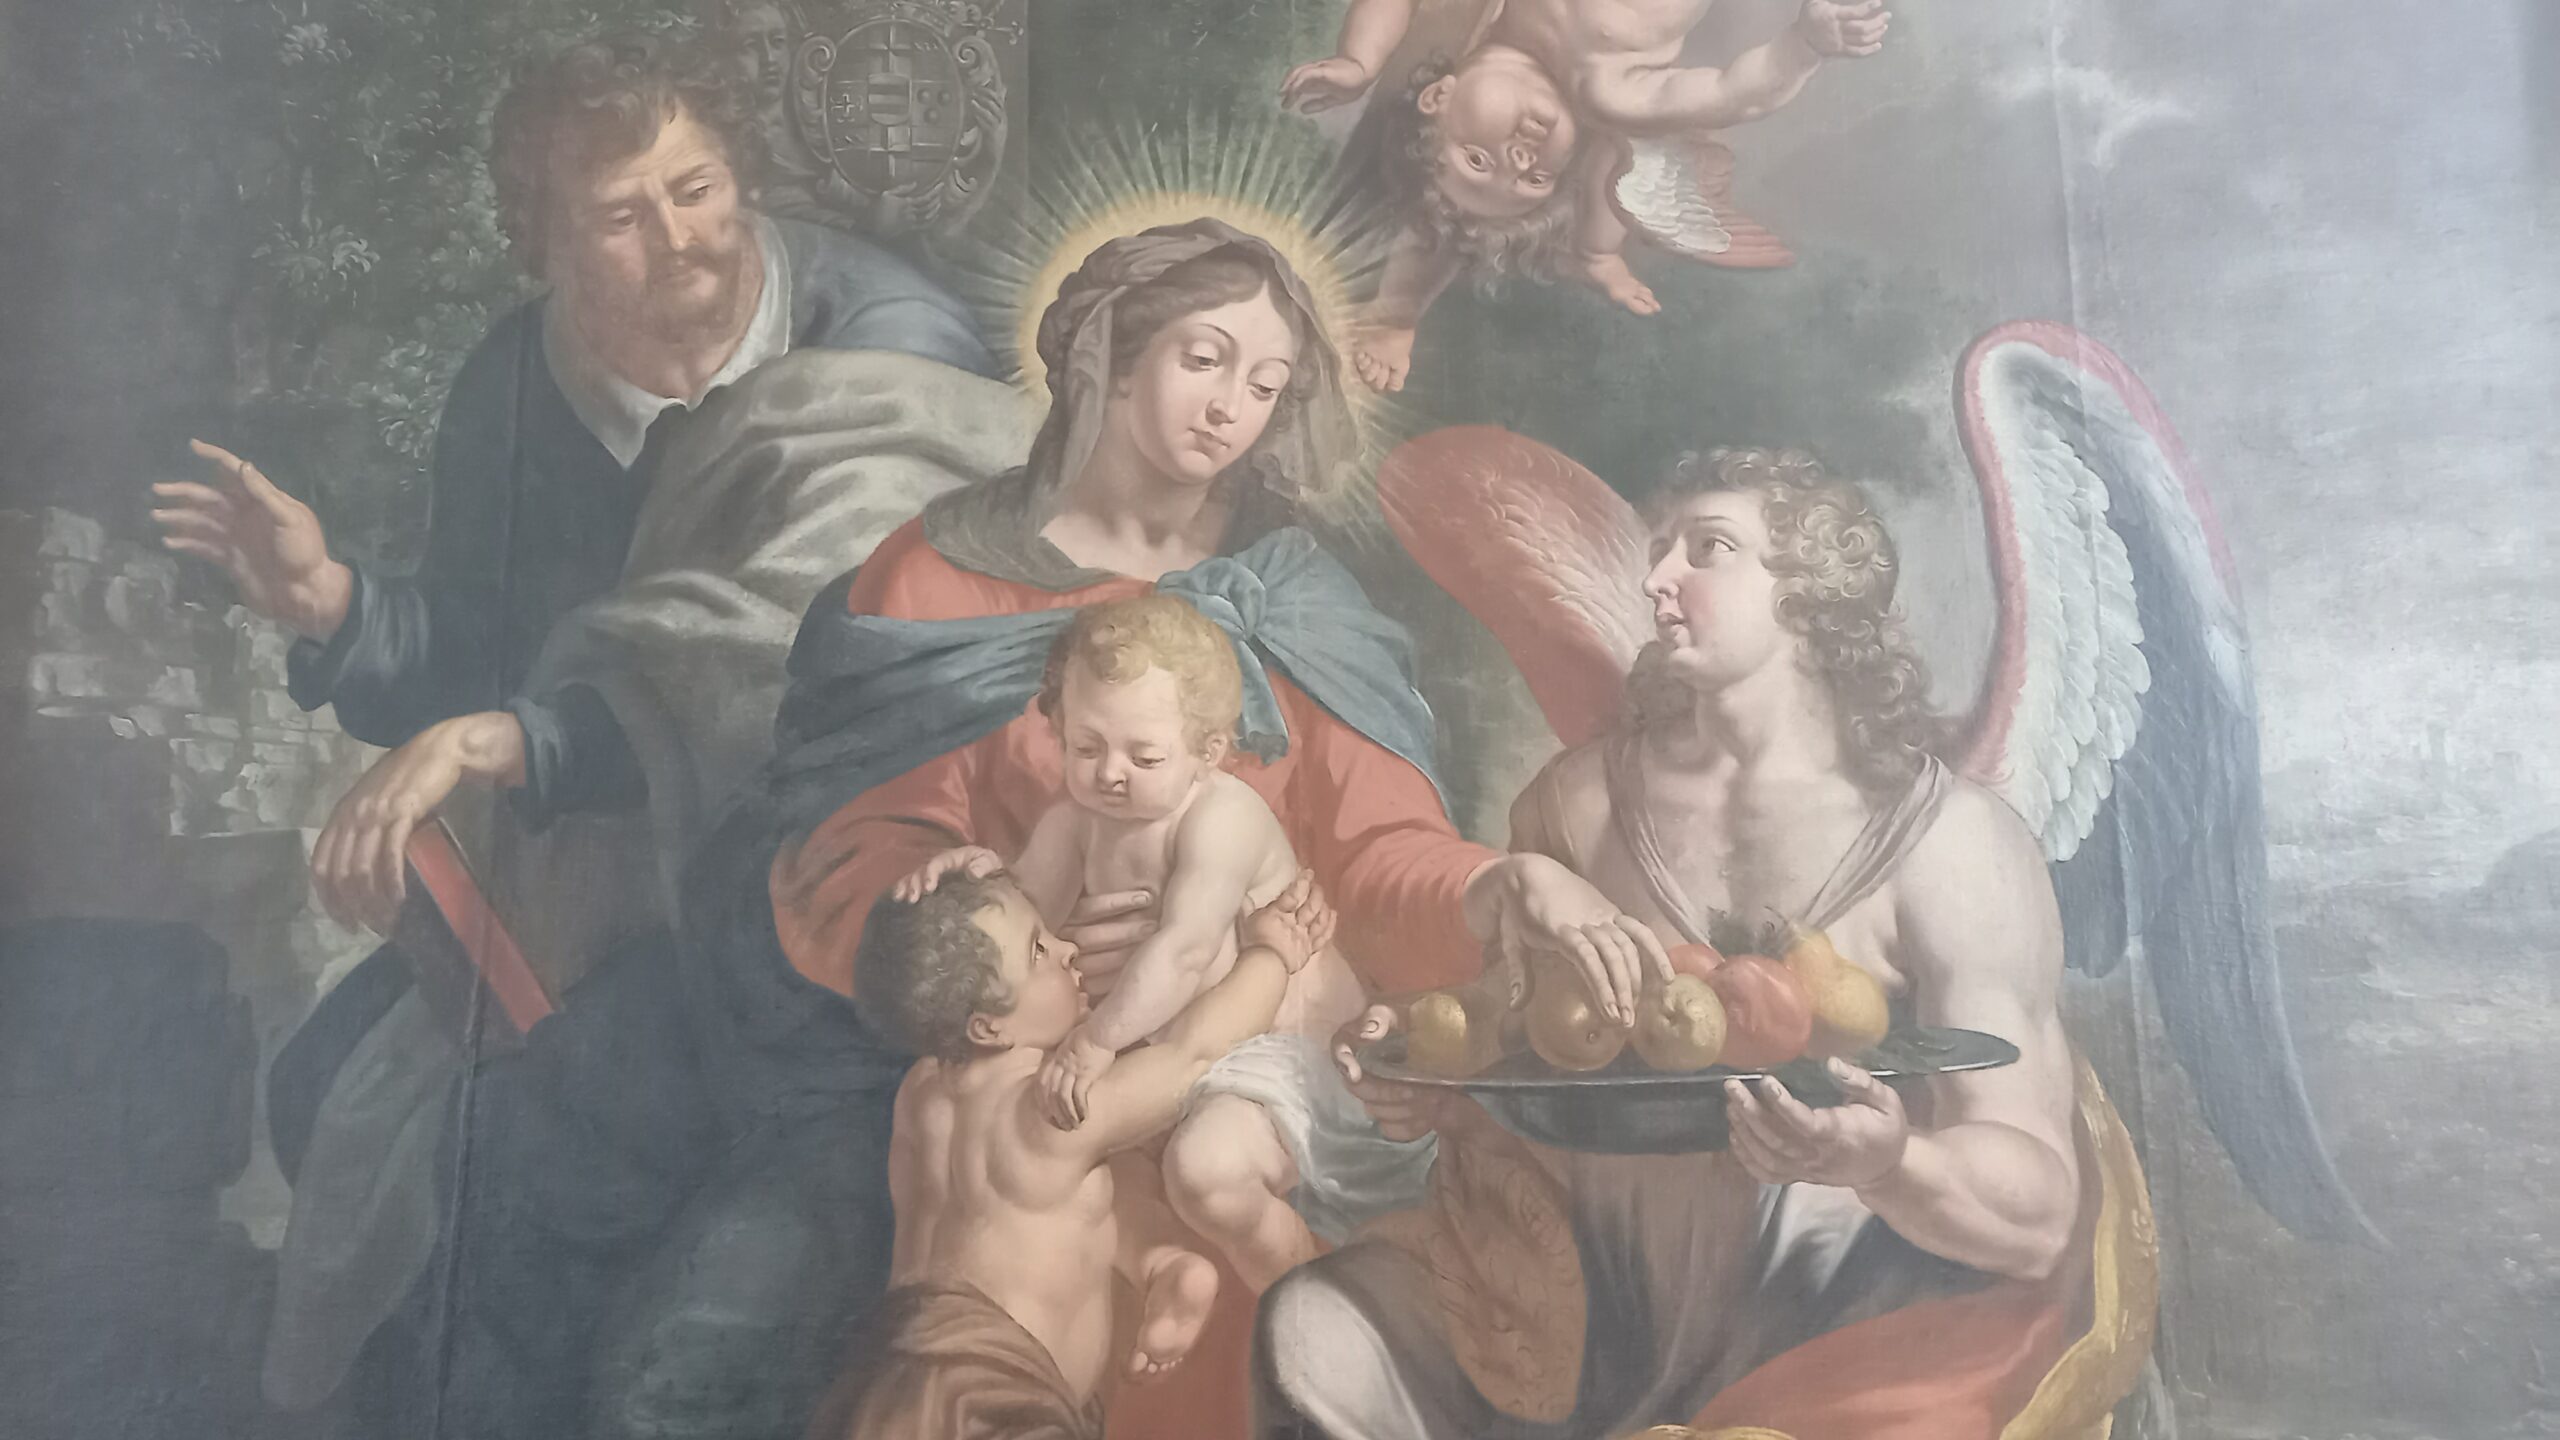 Altarbild: Jesus und Johannes spielen gemeinsam